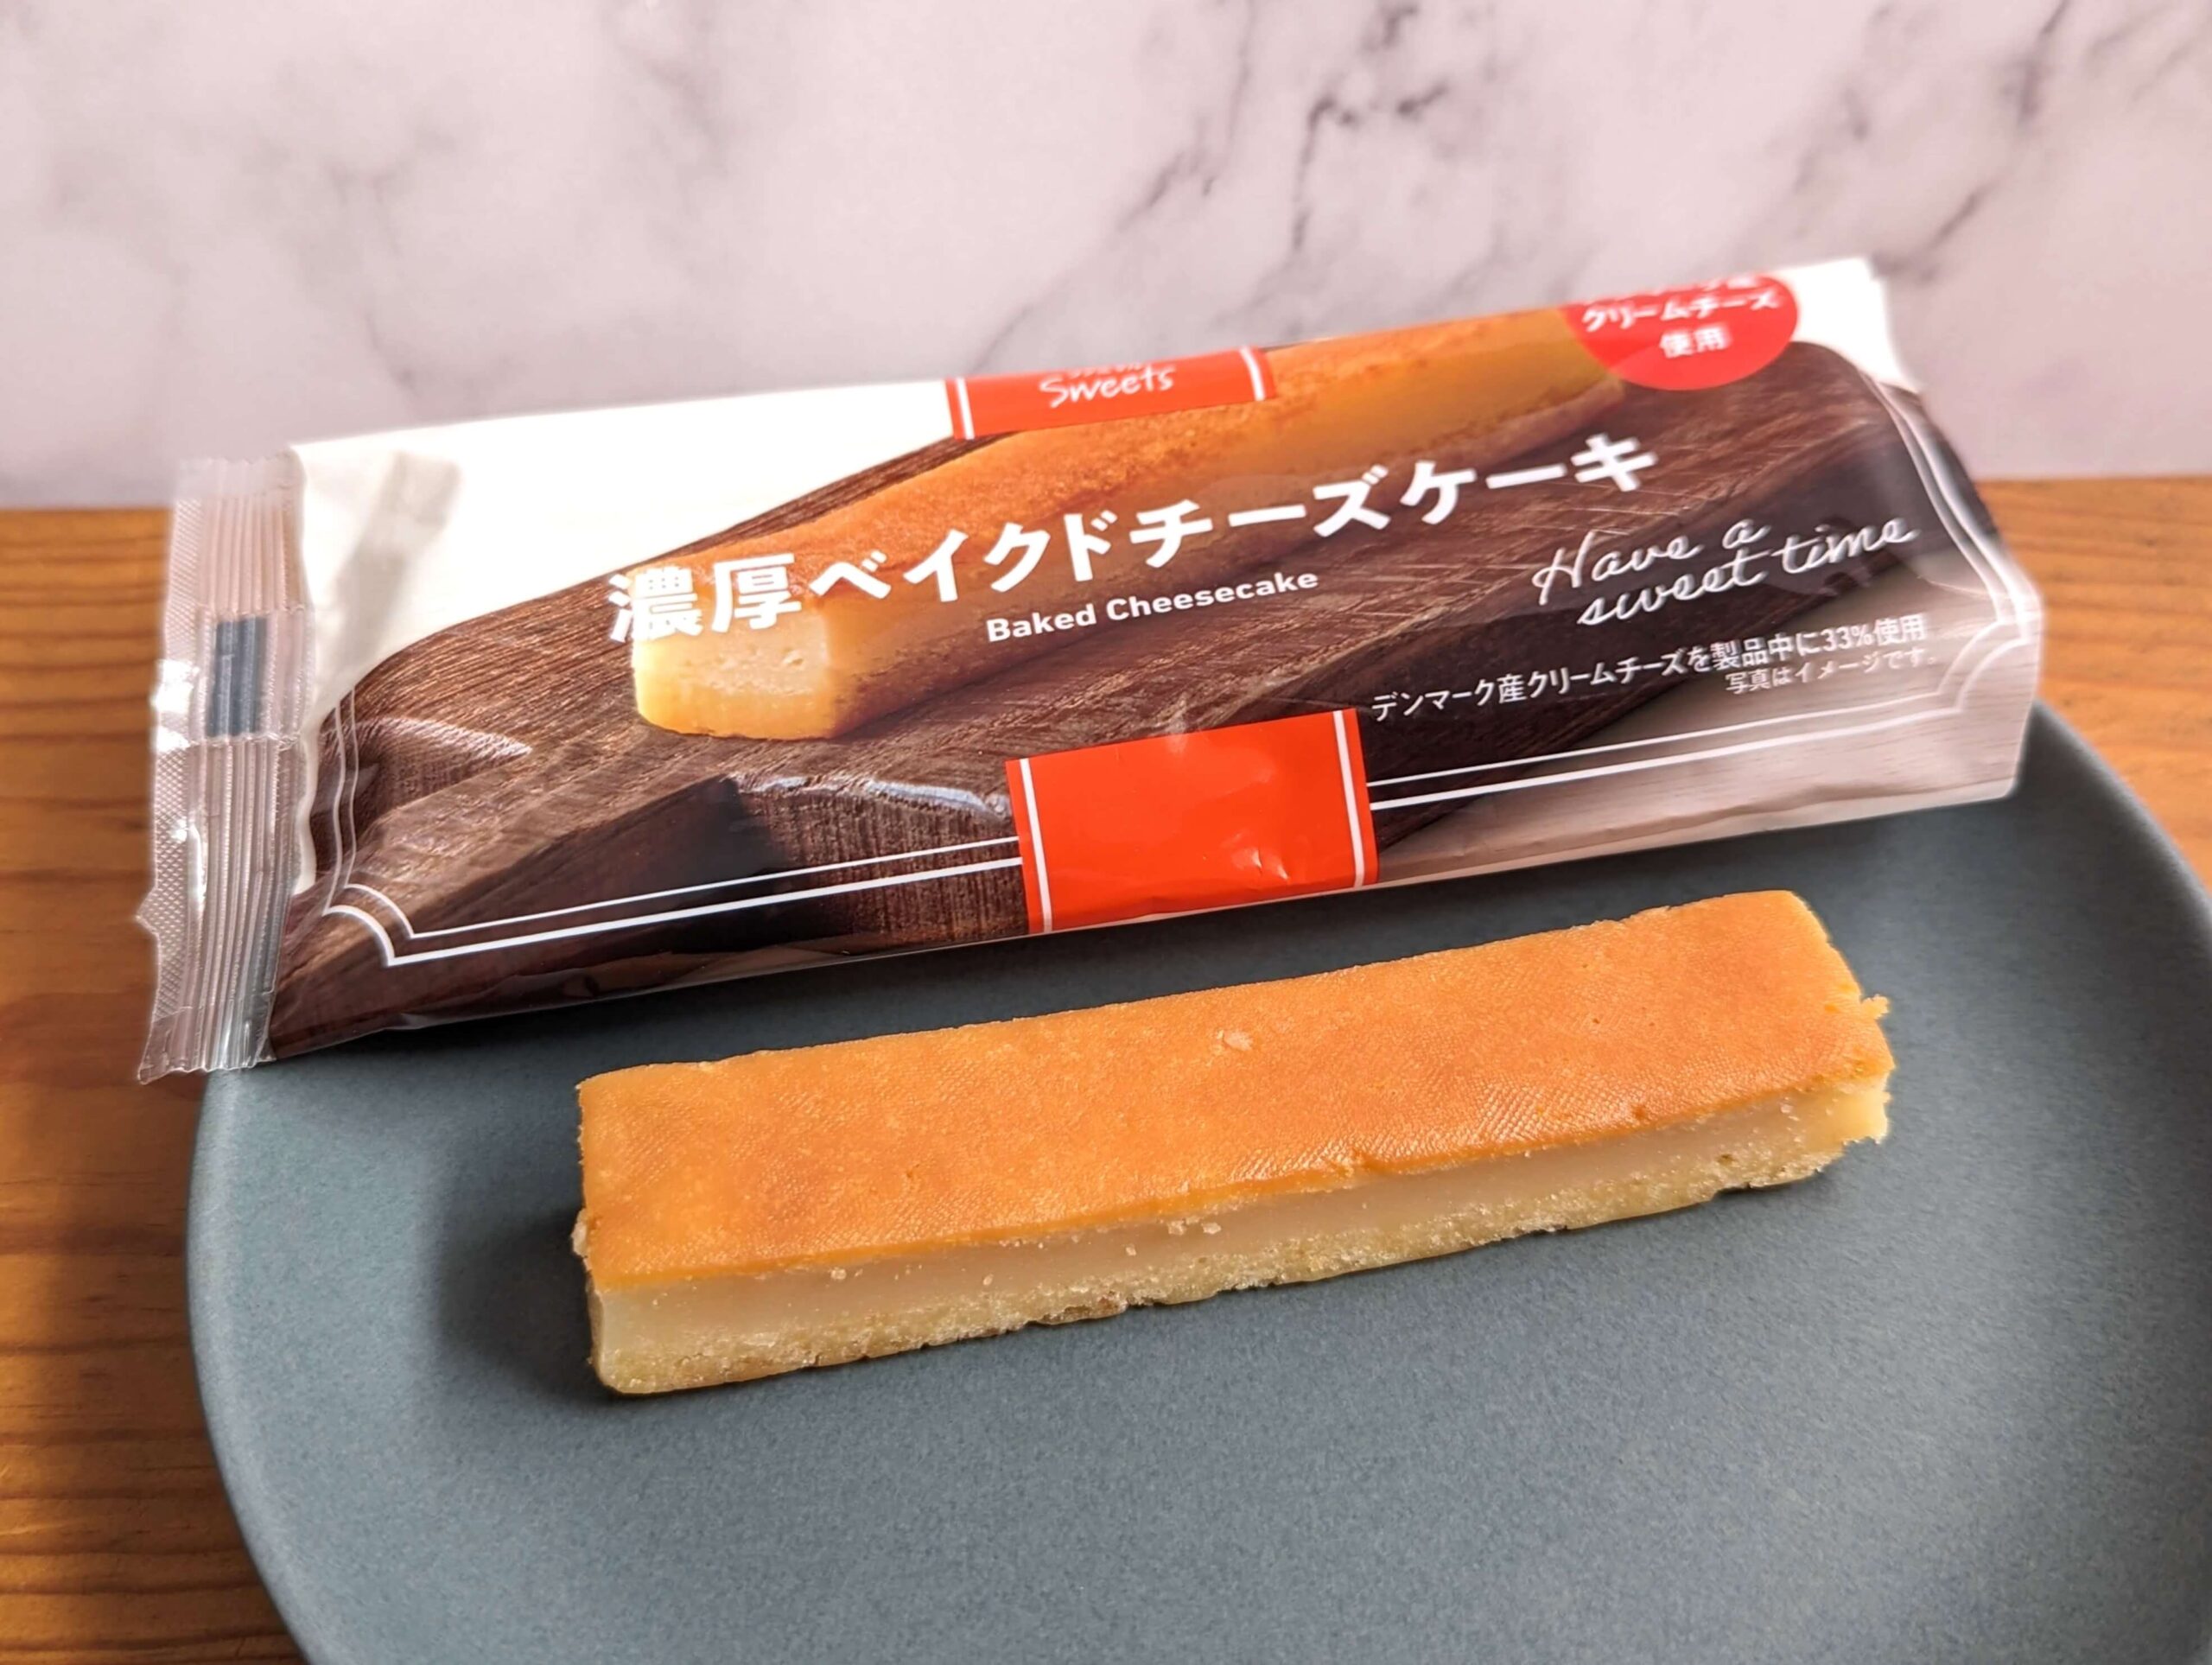 ファミリーマートの「濃厚ベイクドチーズケーキ」 (1)